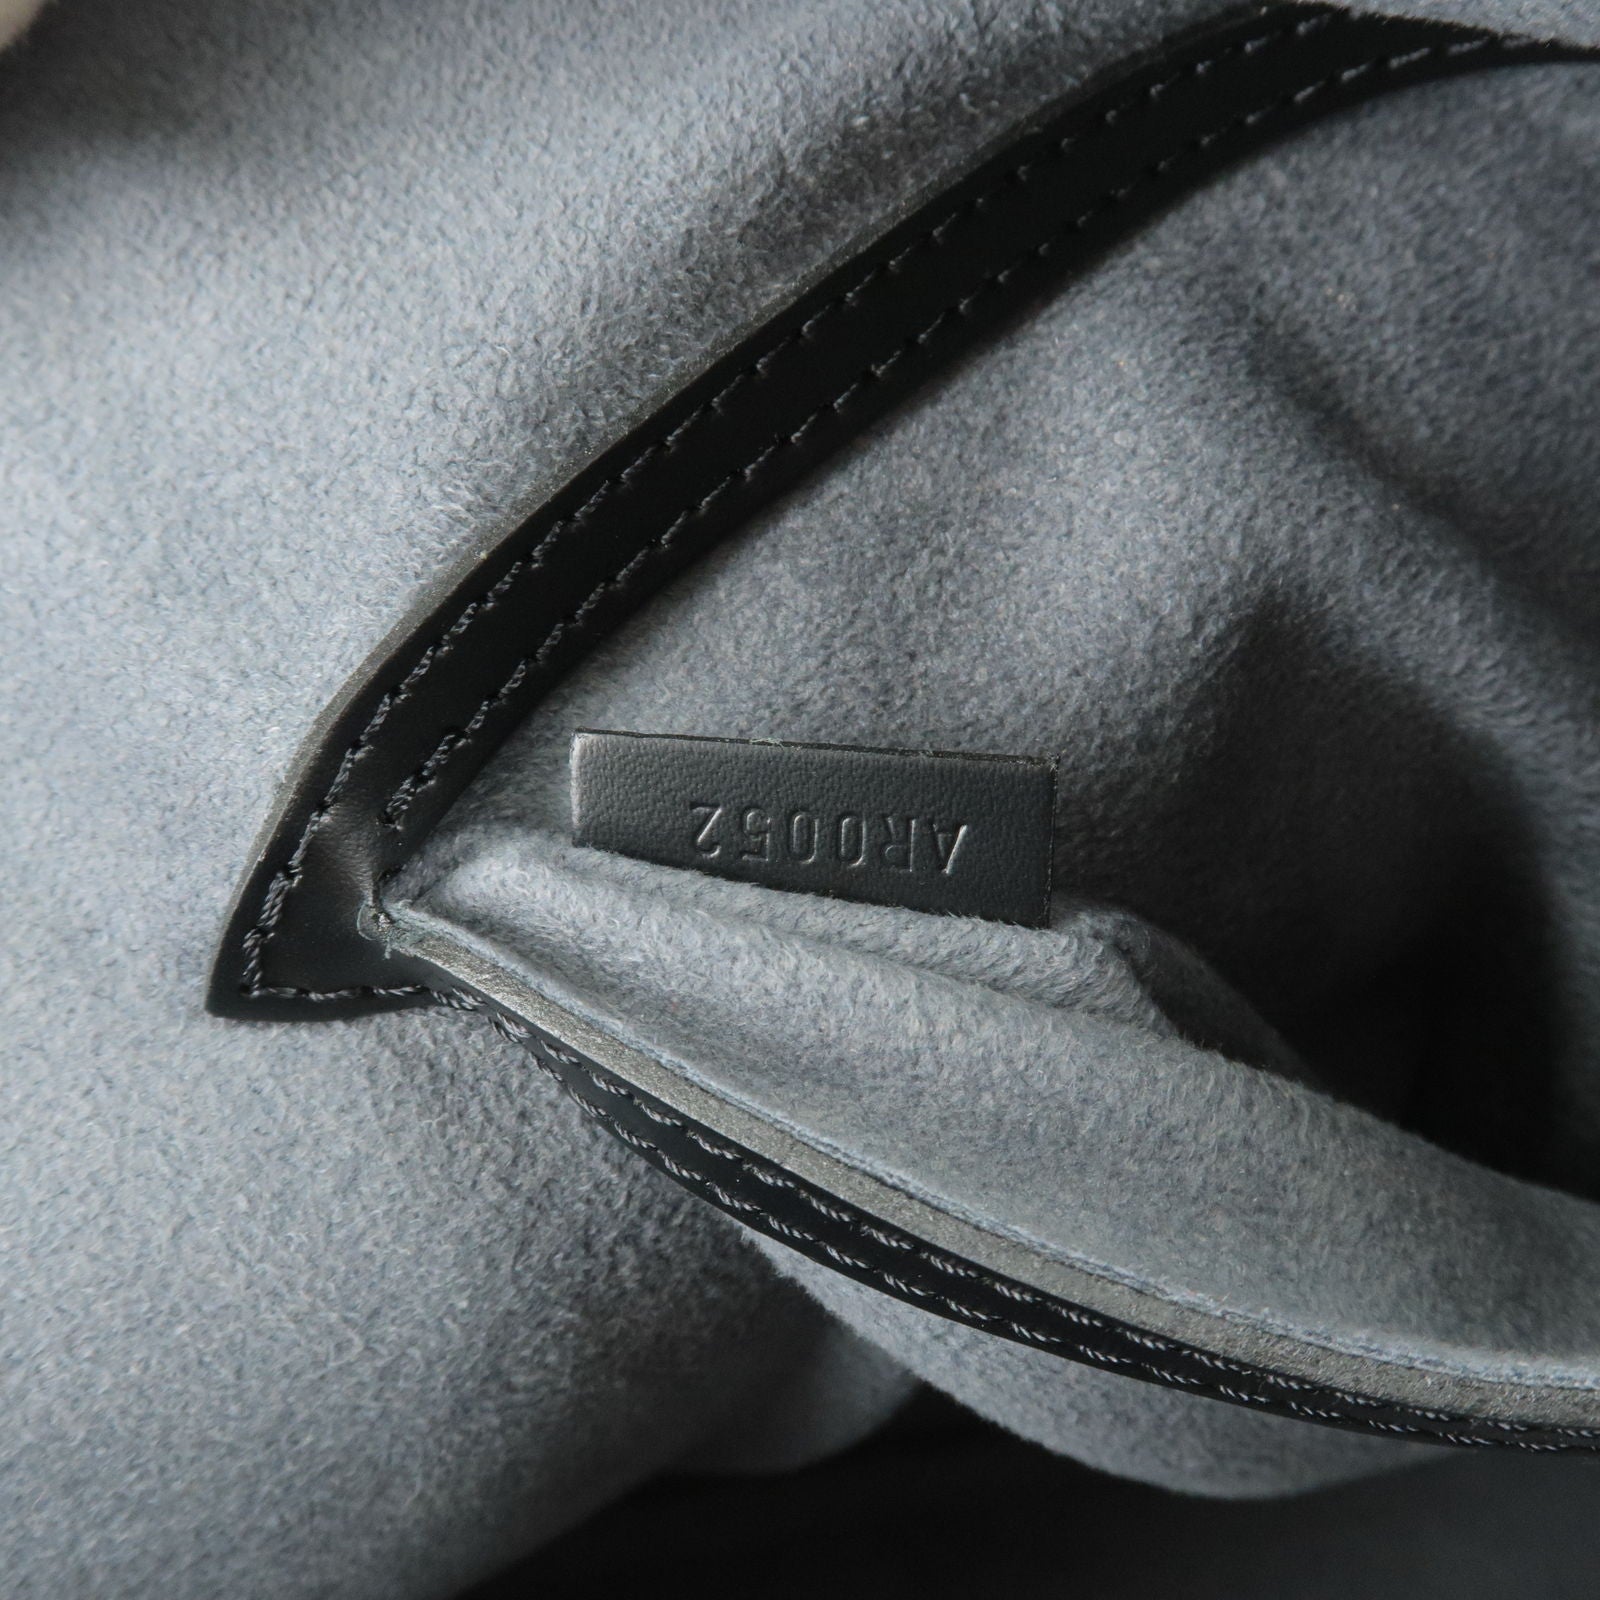 Louis Vuitton Black Epi Sac de Paule PM Bag – Oliver Jewellery